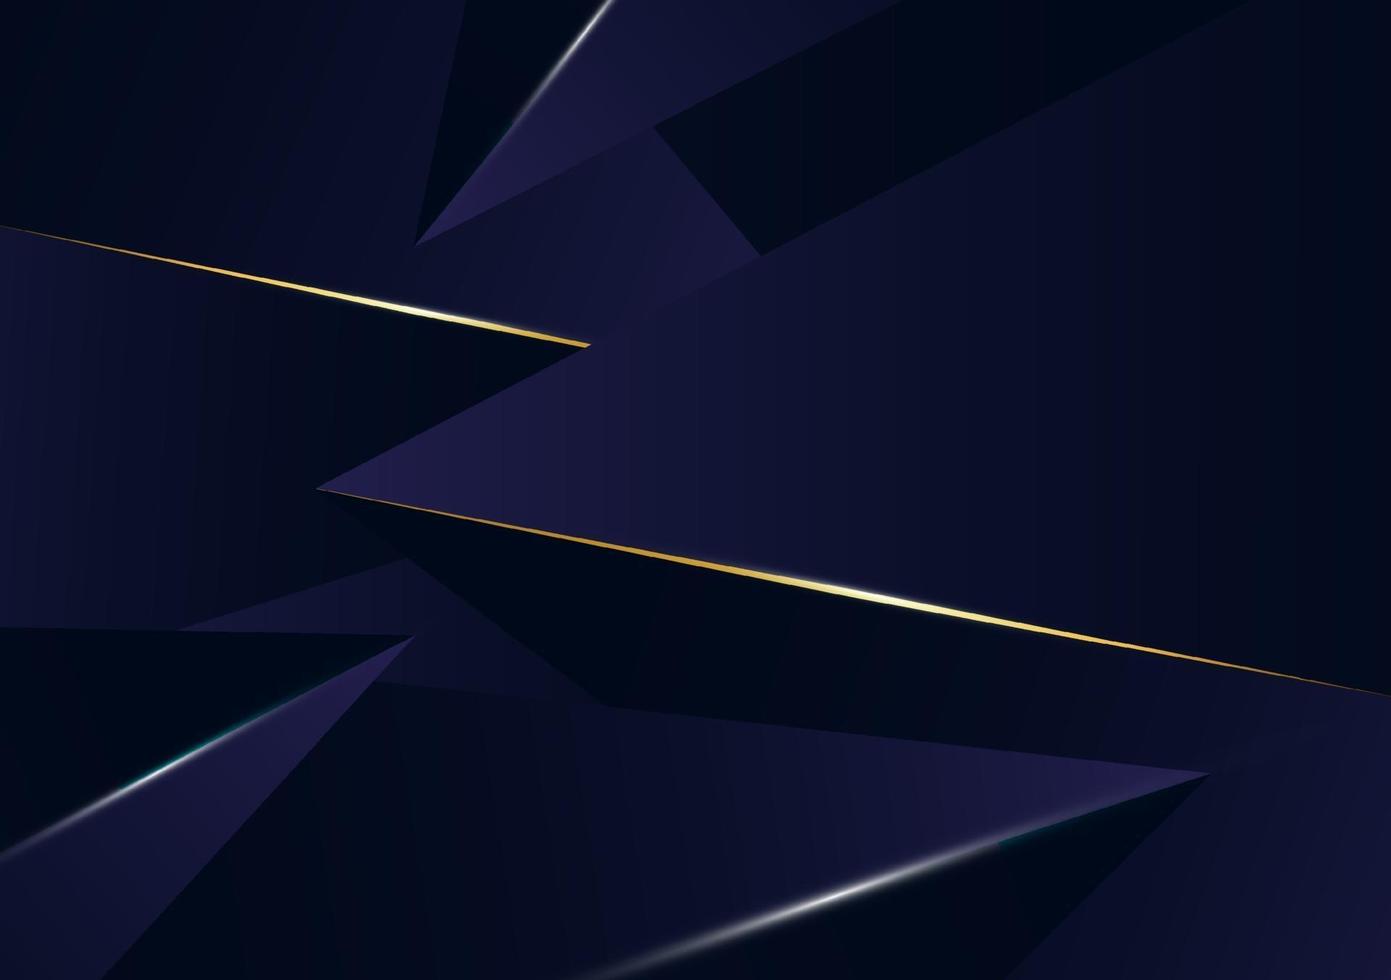 abstracte veelhoekige patroon luxe gouden lijn met donkerblauwe sjabloonachtergrond. premium stijl voor poster, omslag, print, artwork. vector illustratie